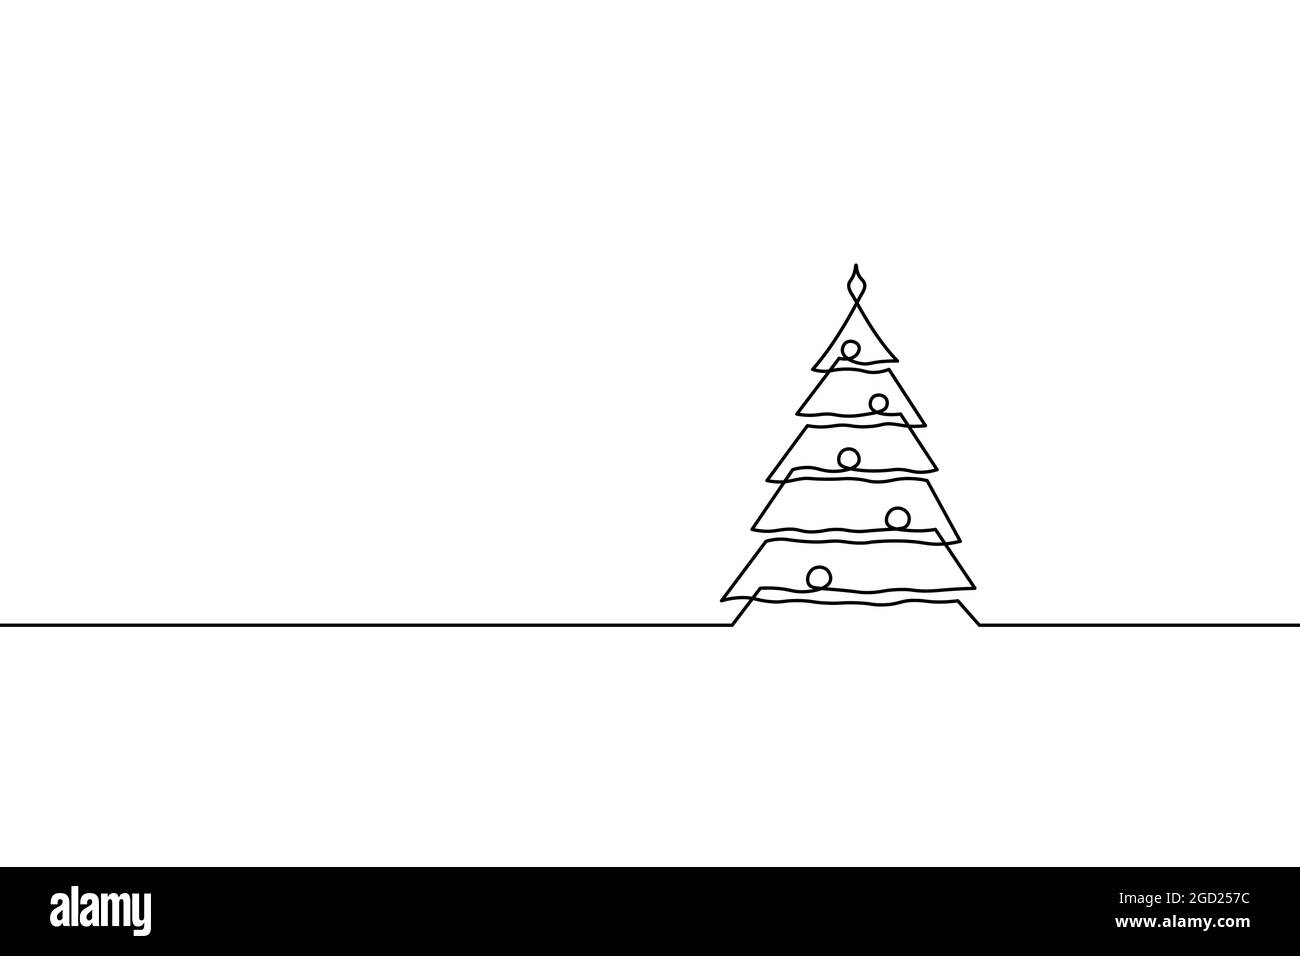 Joyeux Noël seule ligne de l'article carte de souhaits de Noël Décoration arbre silhouette concept. Forêt de sapin un croquis design en bois Illustration de Vecteur